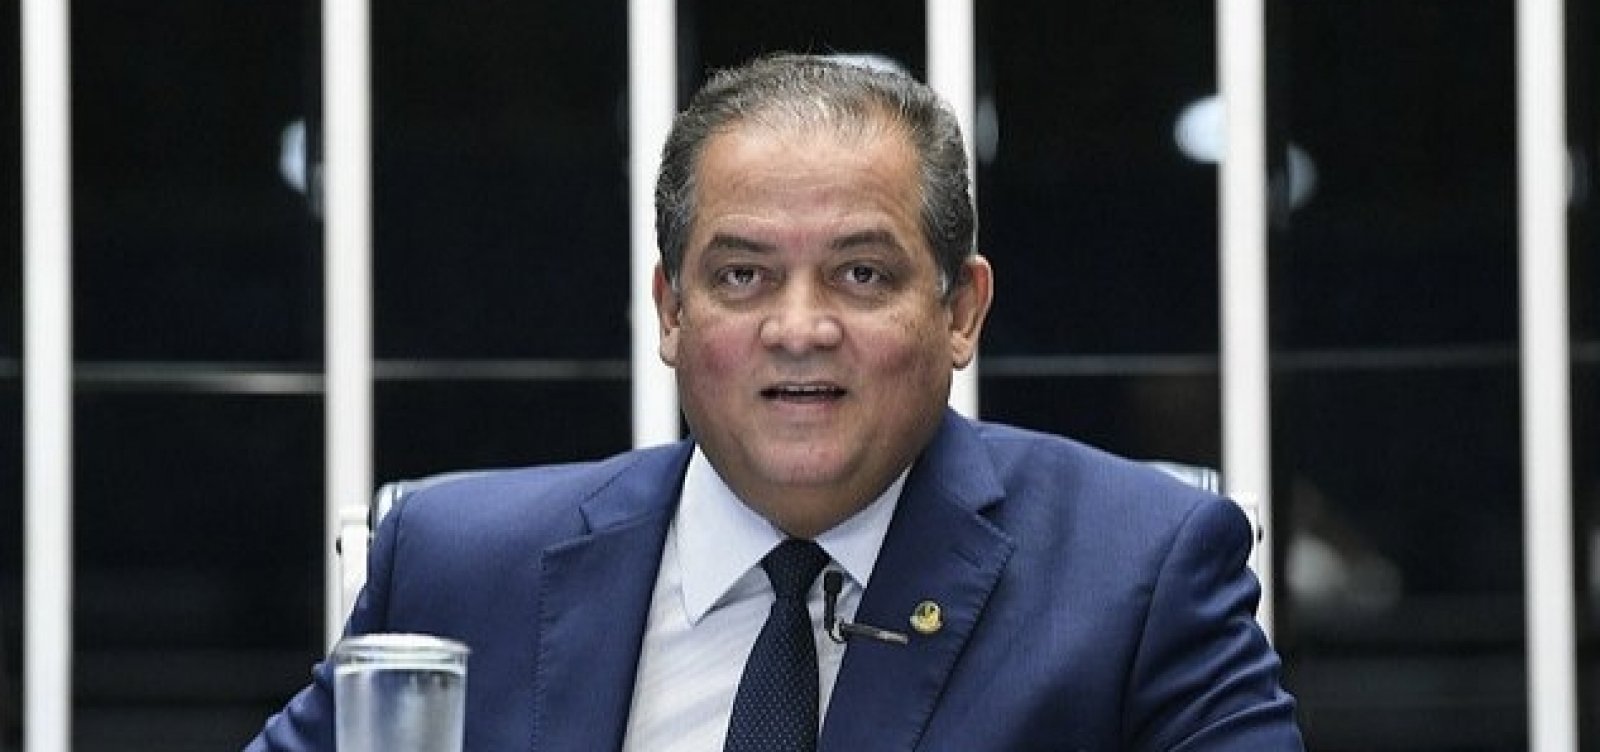 Para líder do governo, reforma no primeiro ano atingiu imagem de Bolsonaro 